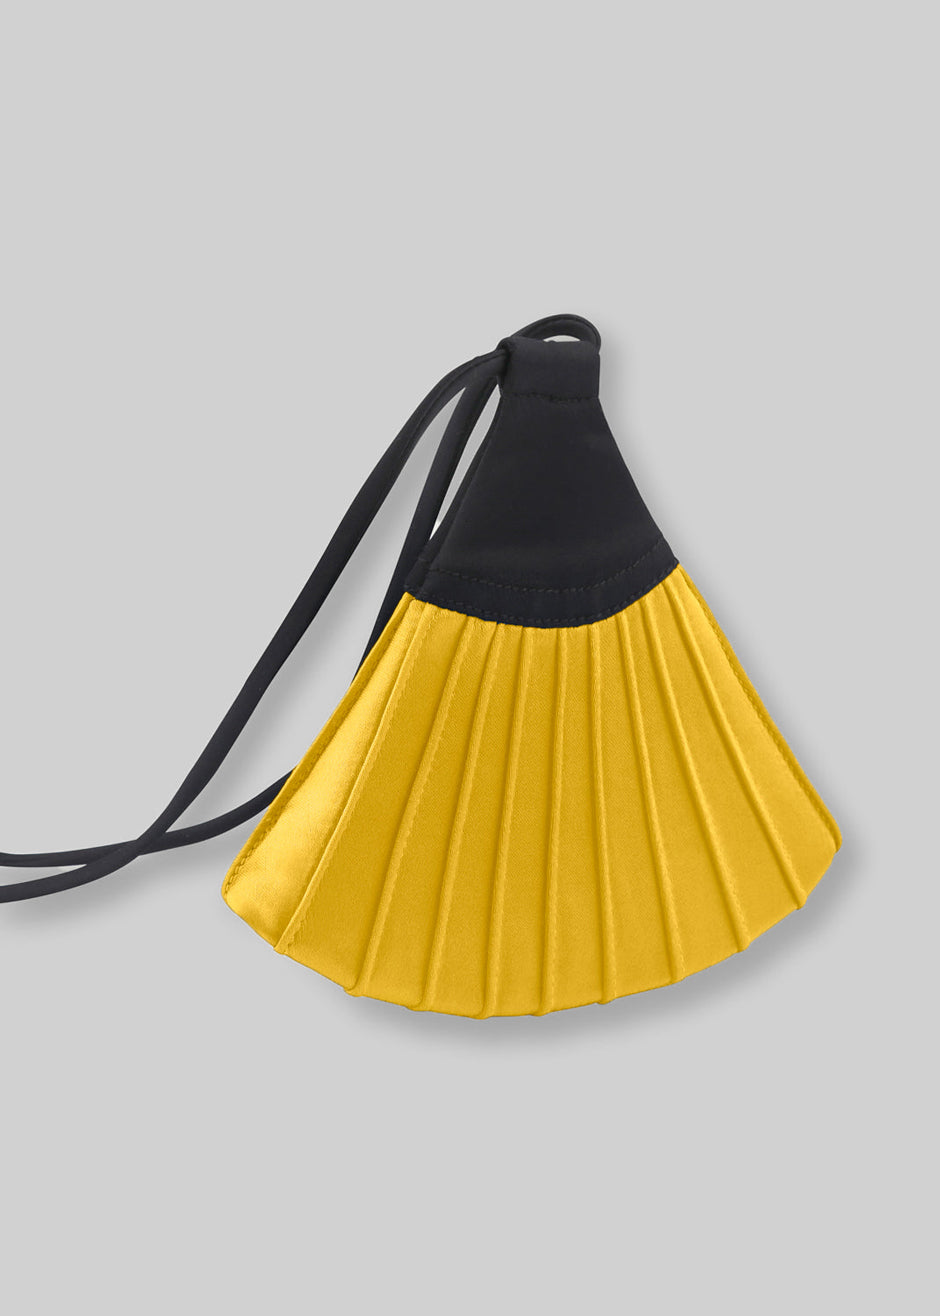 Bevza Mini Fan Bag - Yellow - 6